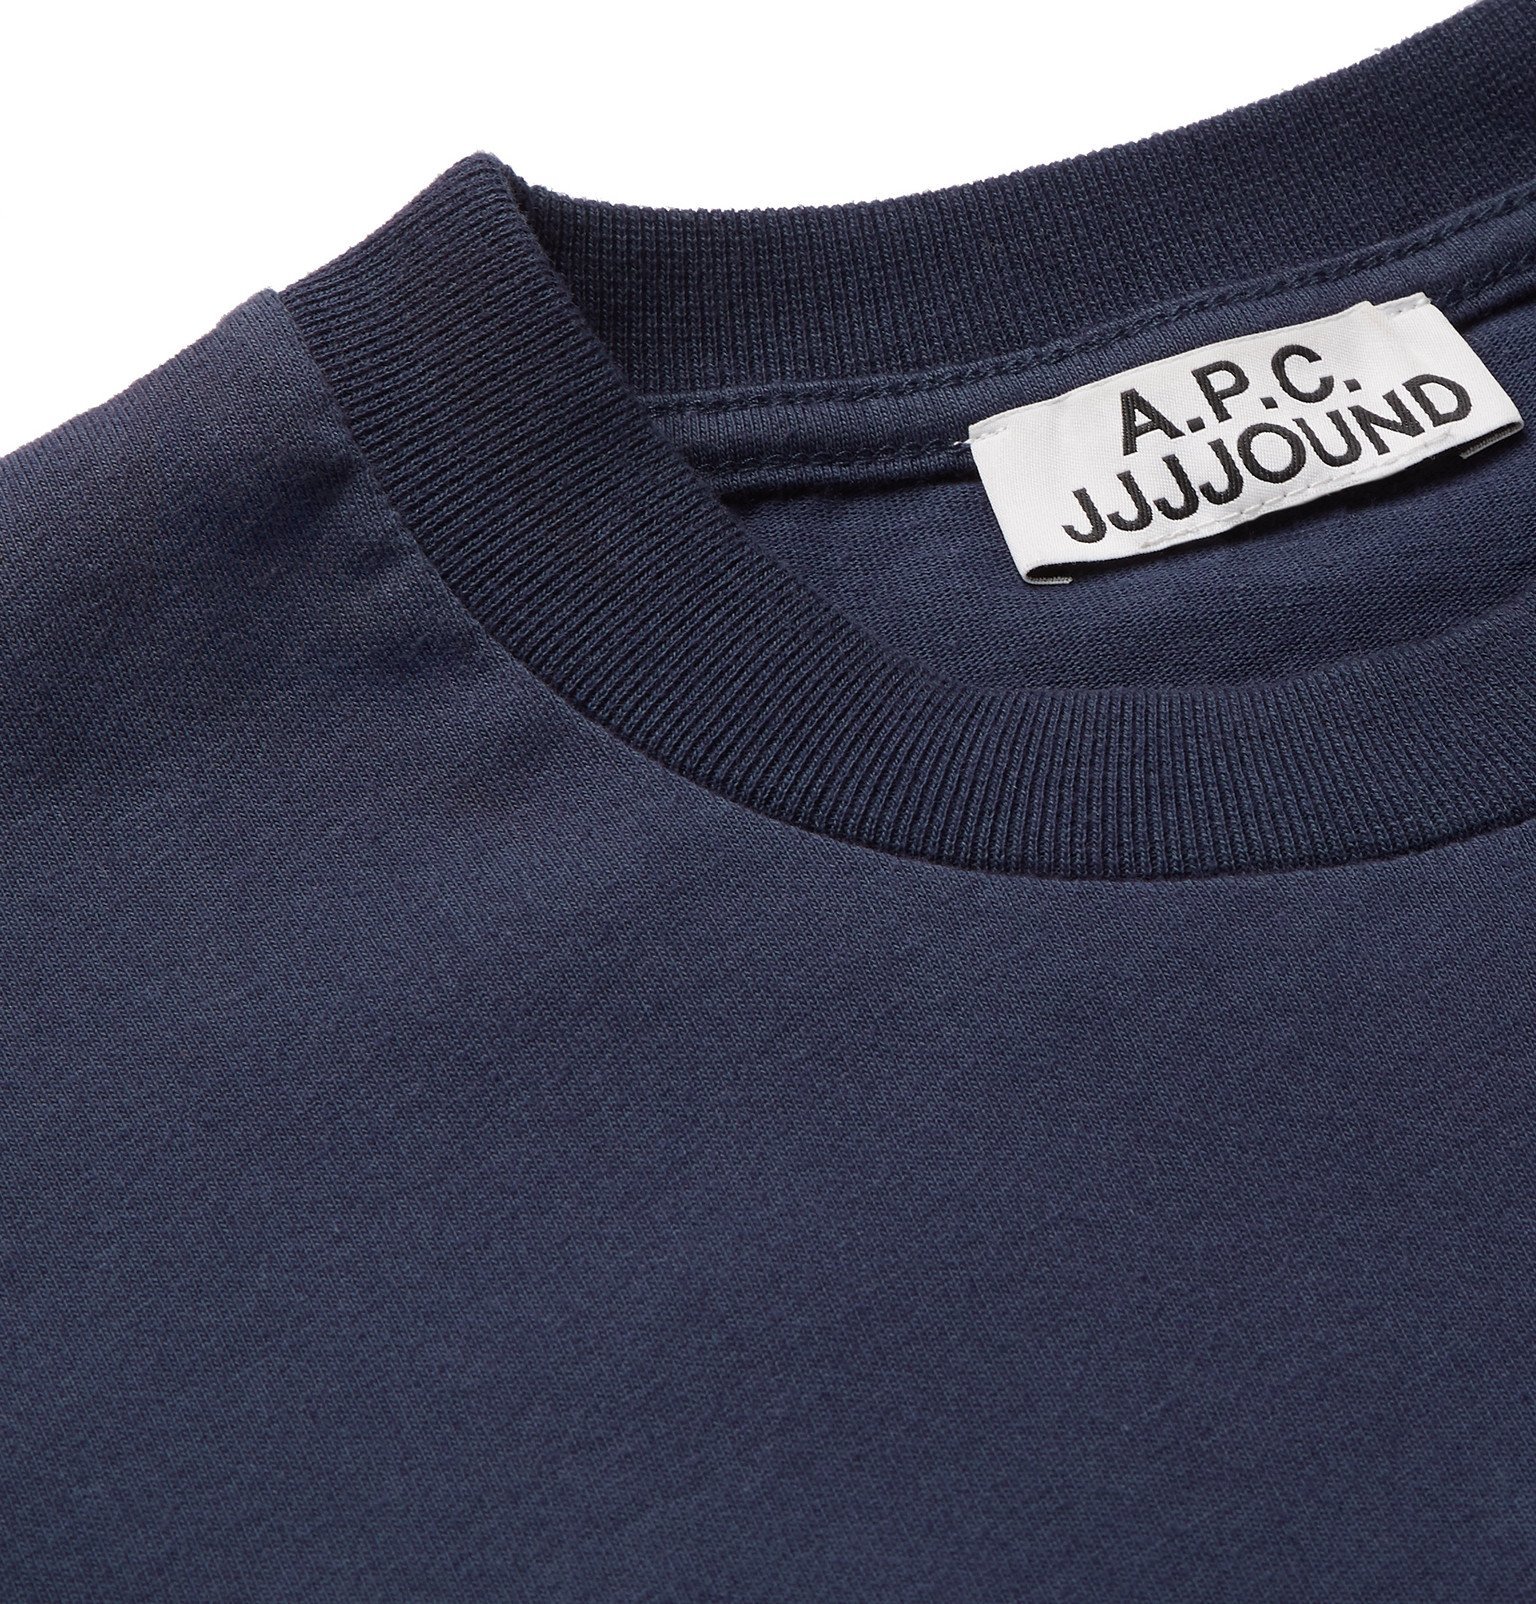 A.P.C. - JJJJound Logo-Print Cotton-Jersey T-Shirt - Blue A.P.C.